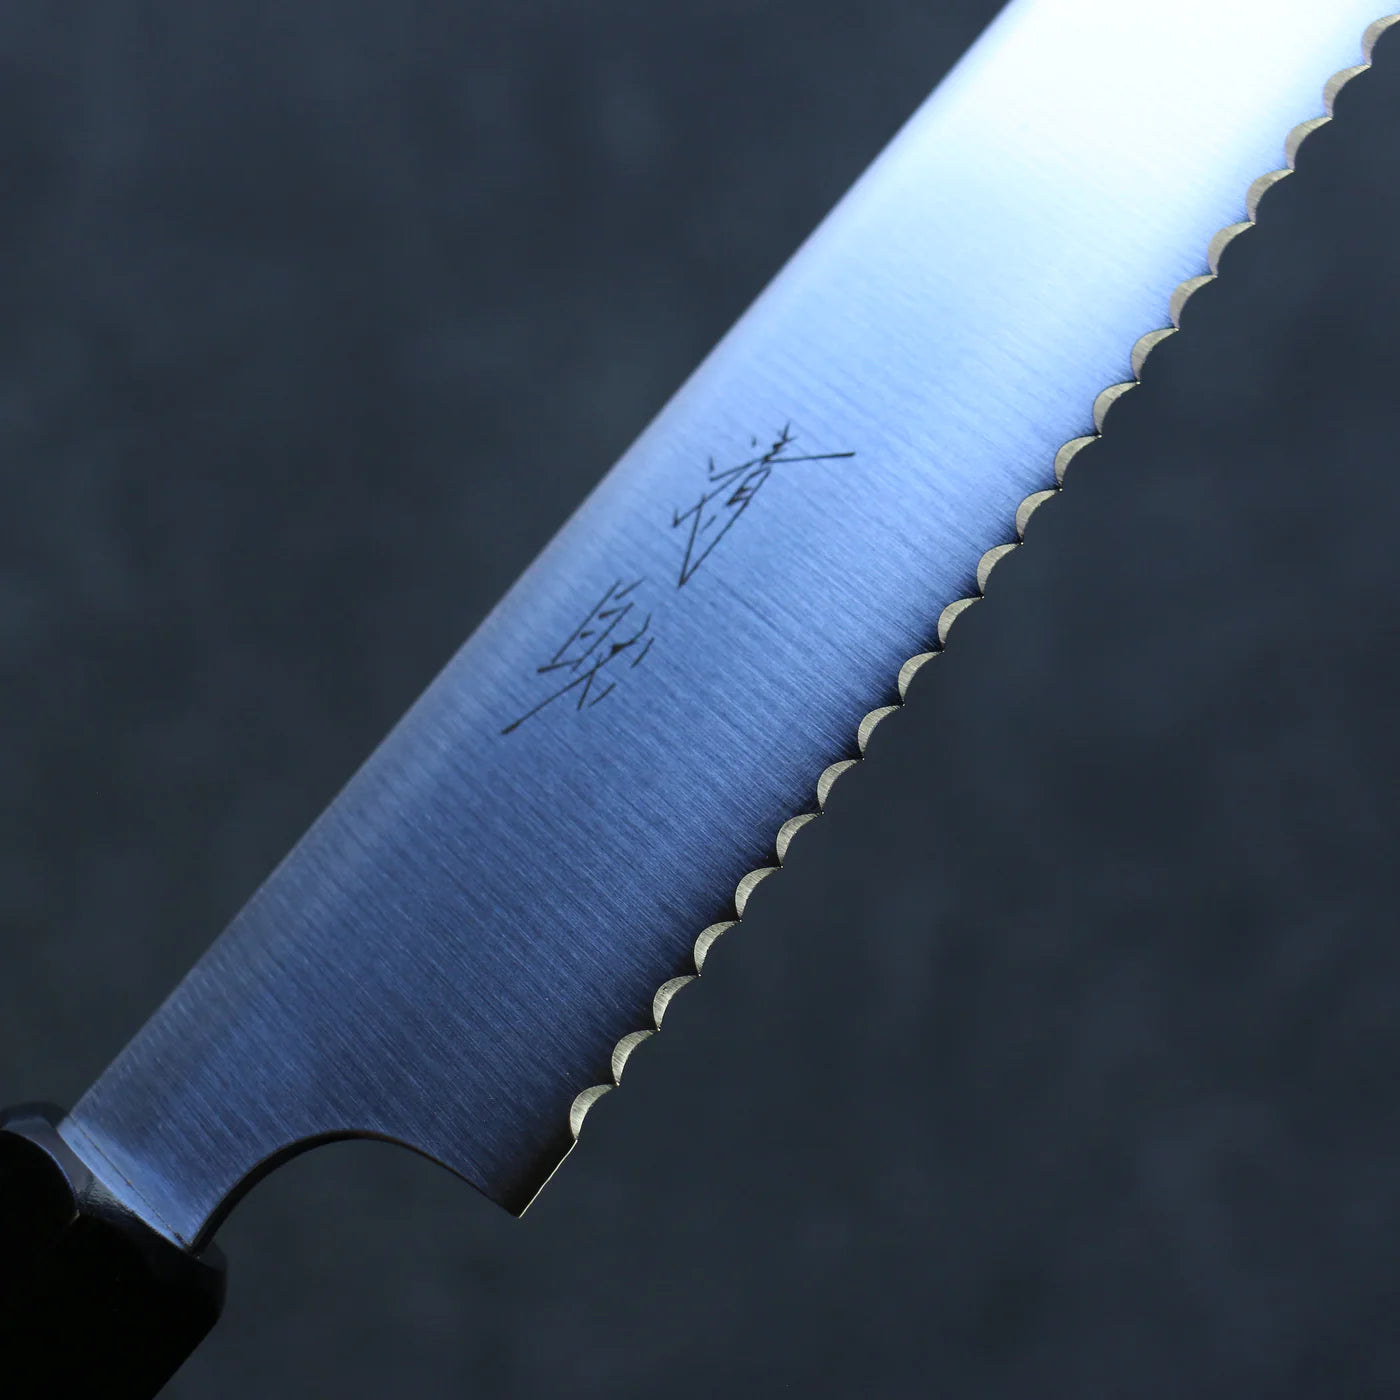 Free ship - Dao cắt bánh mì chuyên dụng dao Nhật thương hiệu Seisuke, thép không gỉ 240mm, chuôi dao gỗ ép đỏ.